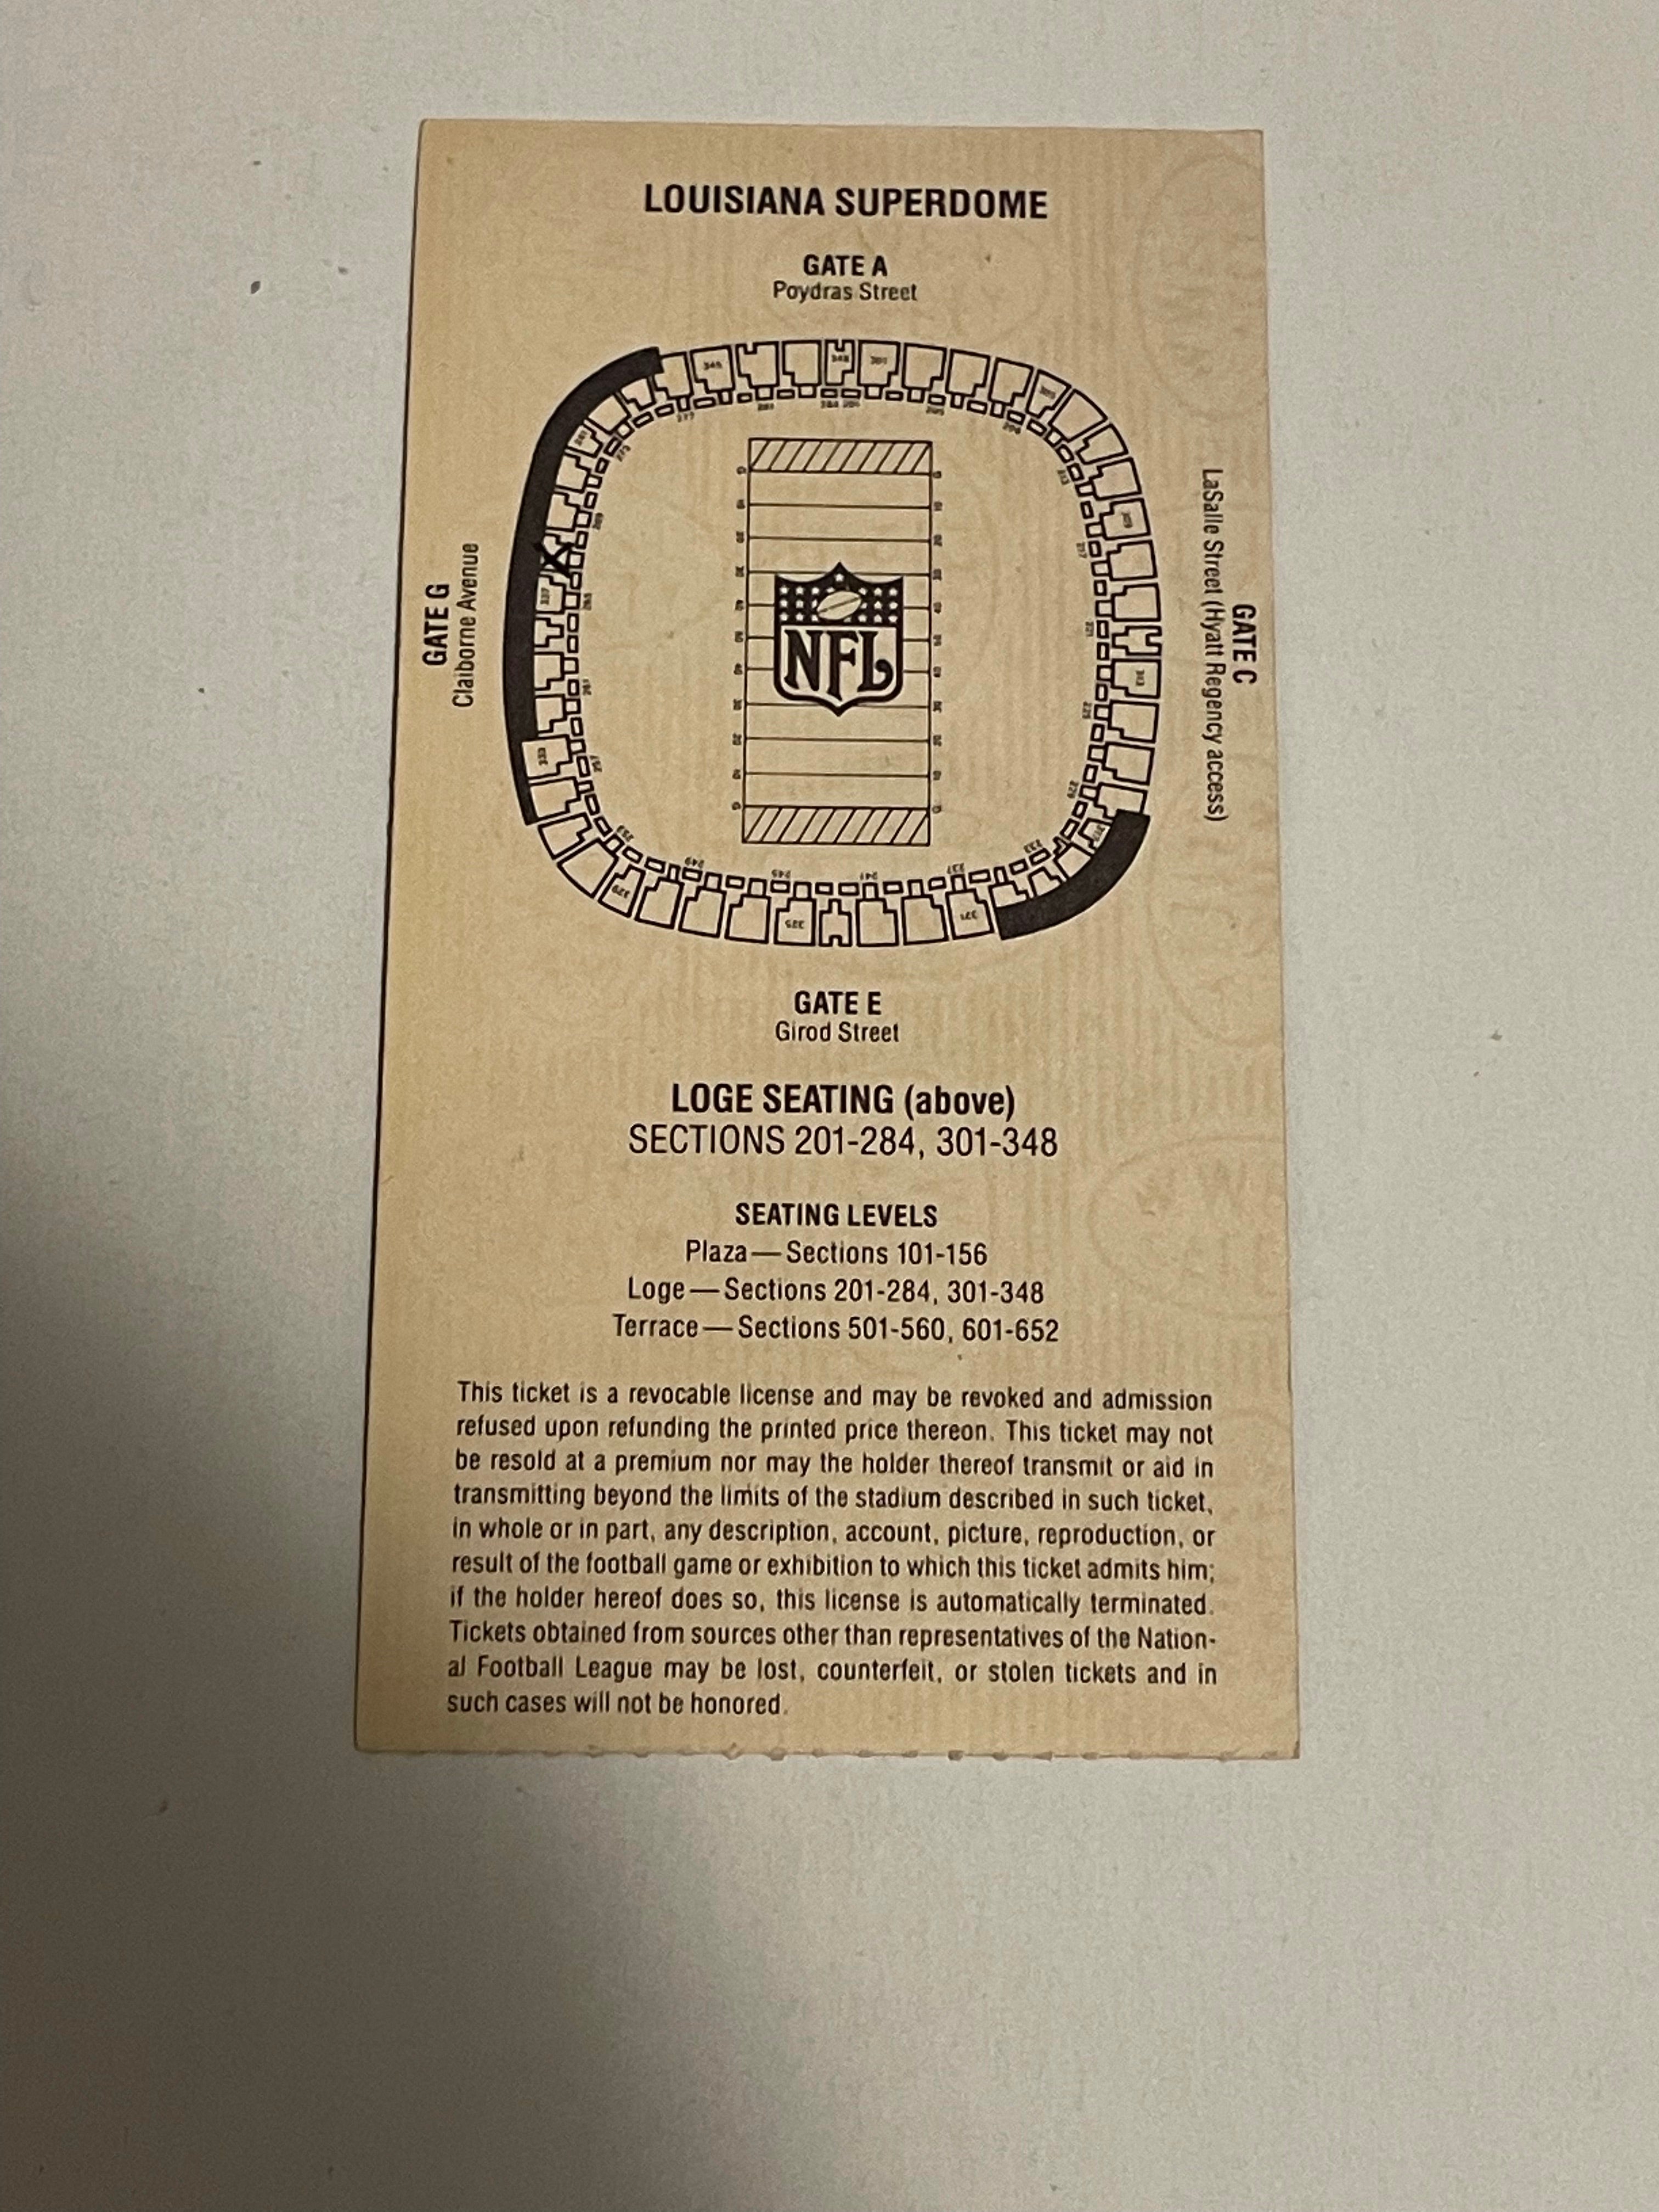 Super Bowl XXIV rare original game ticket 1990